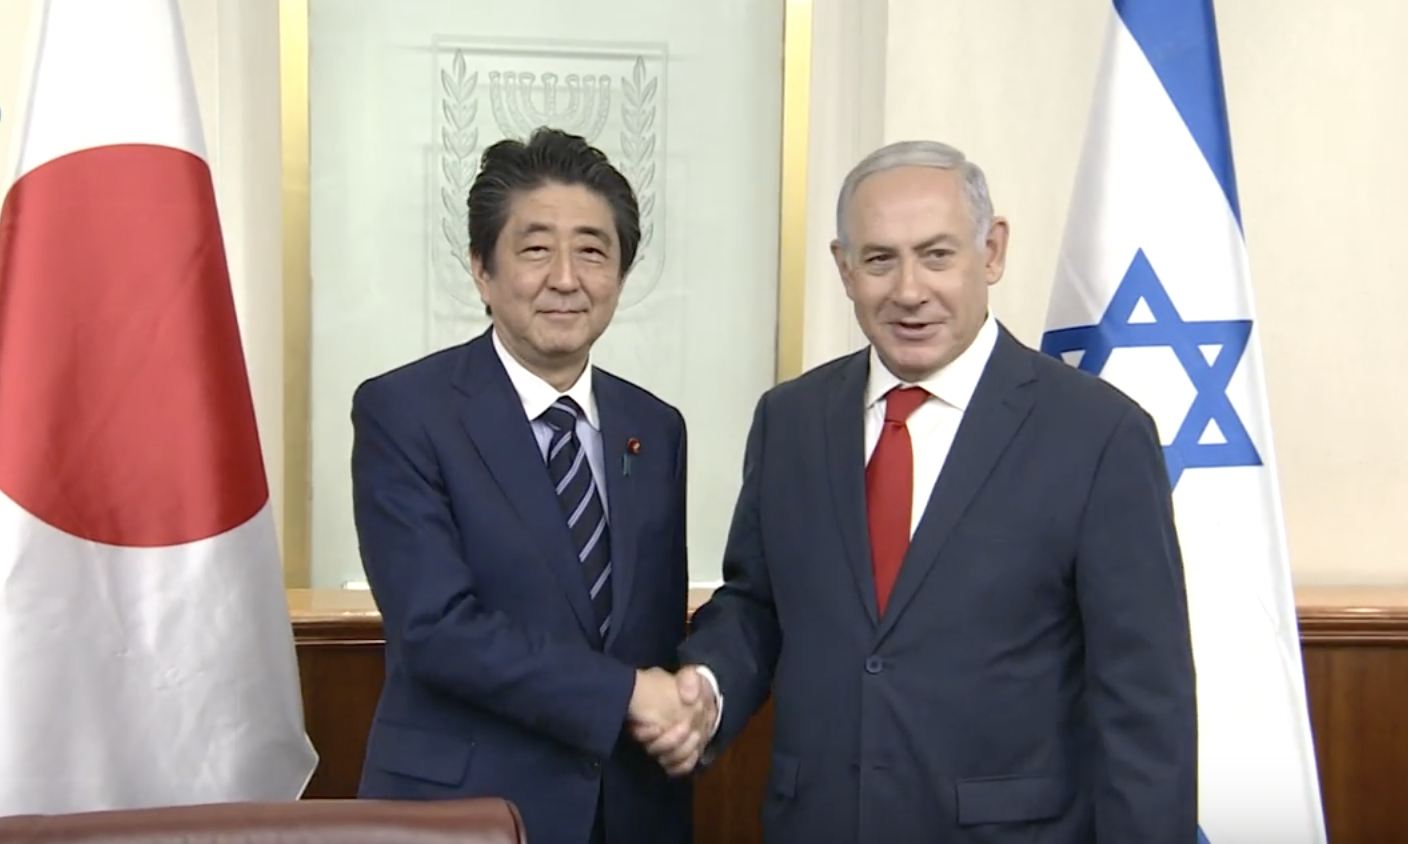 イスラエル（ユダヤ人）と良好な国交関係にある日本